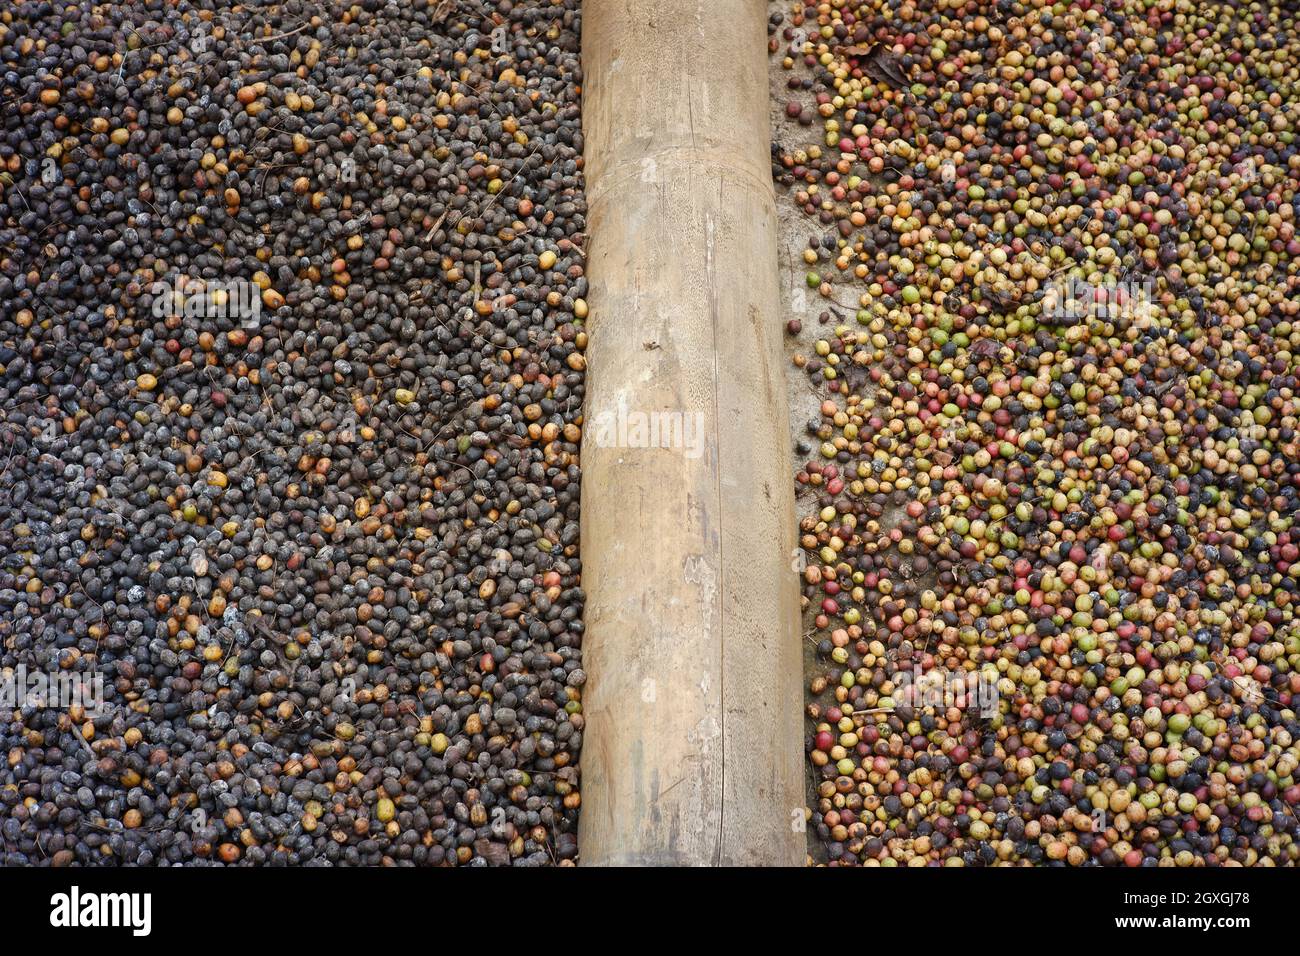 Verschiedene Arten von Kaffeebohnen werden getrocknet und getrennt, um nicht zu mischen. Der Trocknungsprozess von Kaffeebohnen nach der Sortierung. Qualität Kaffeeindustrie Stockfoto